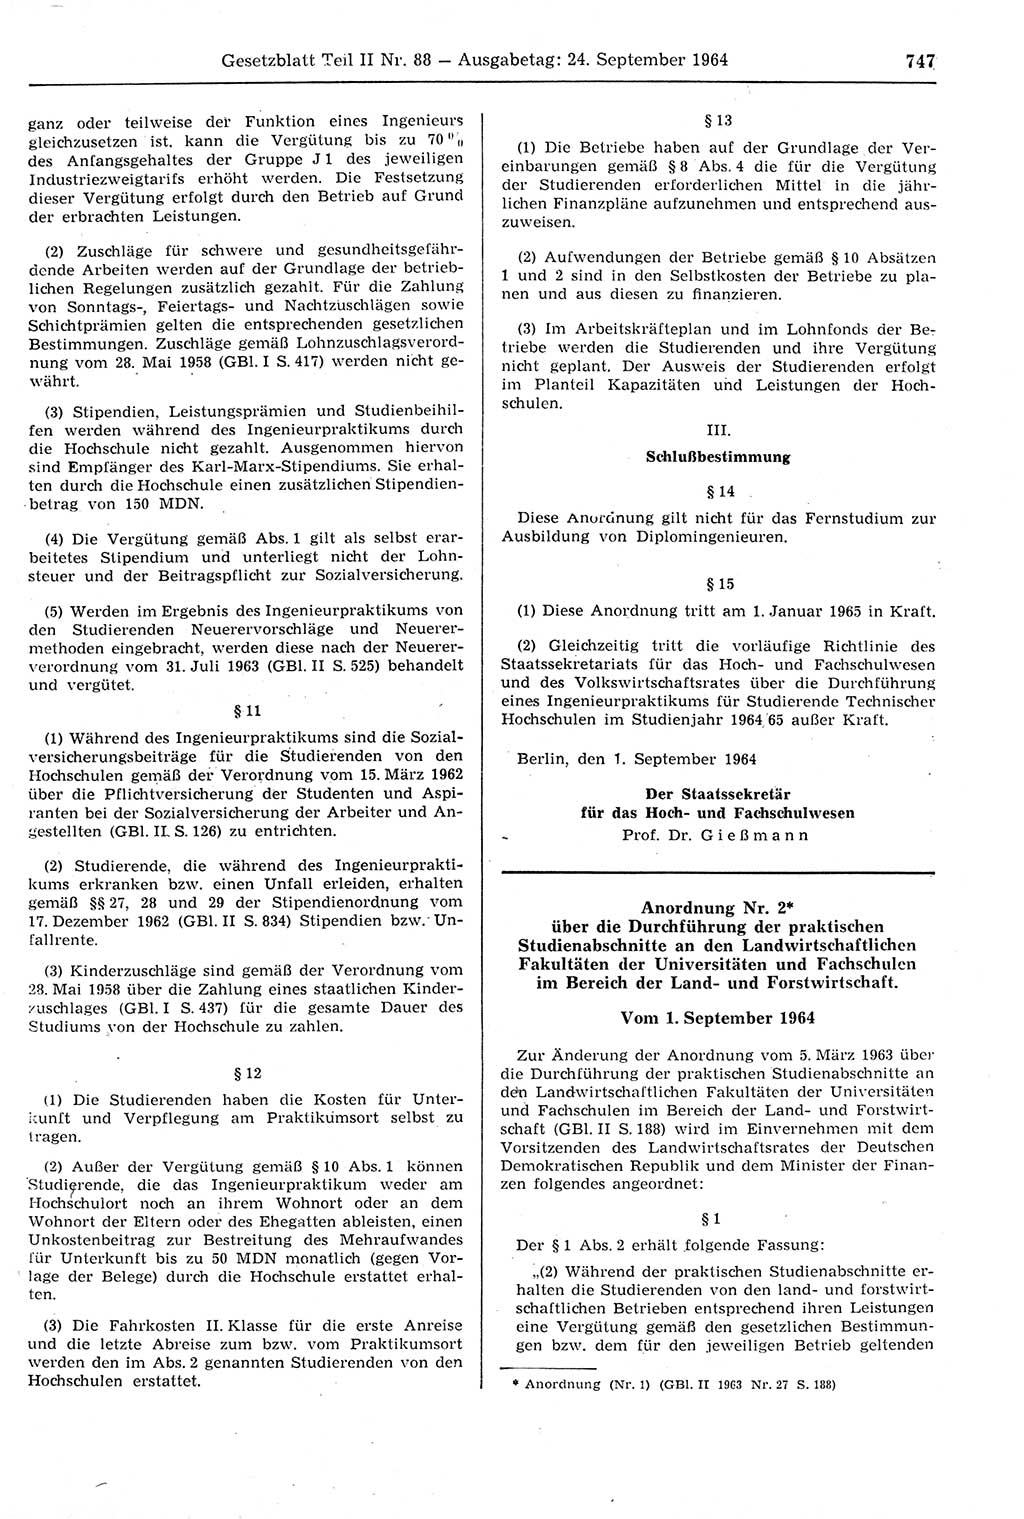 Gesetzblatt (GBl.) der Deutschen Demokratischen Republik (DDR) Teil ⅠⅠ 1964, Seite 747 (GBl. DDR ⅠⅠ 1964, S. 747)